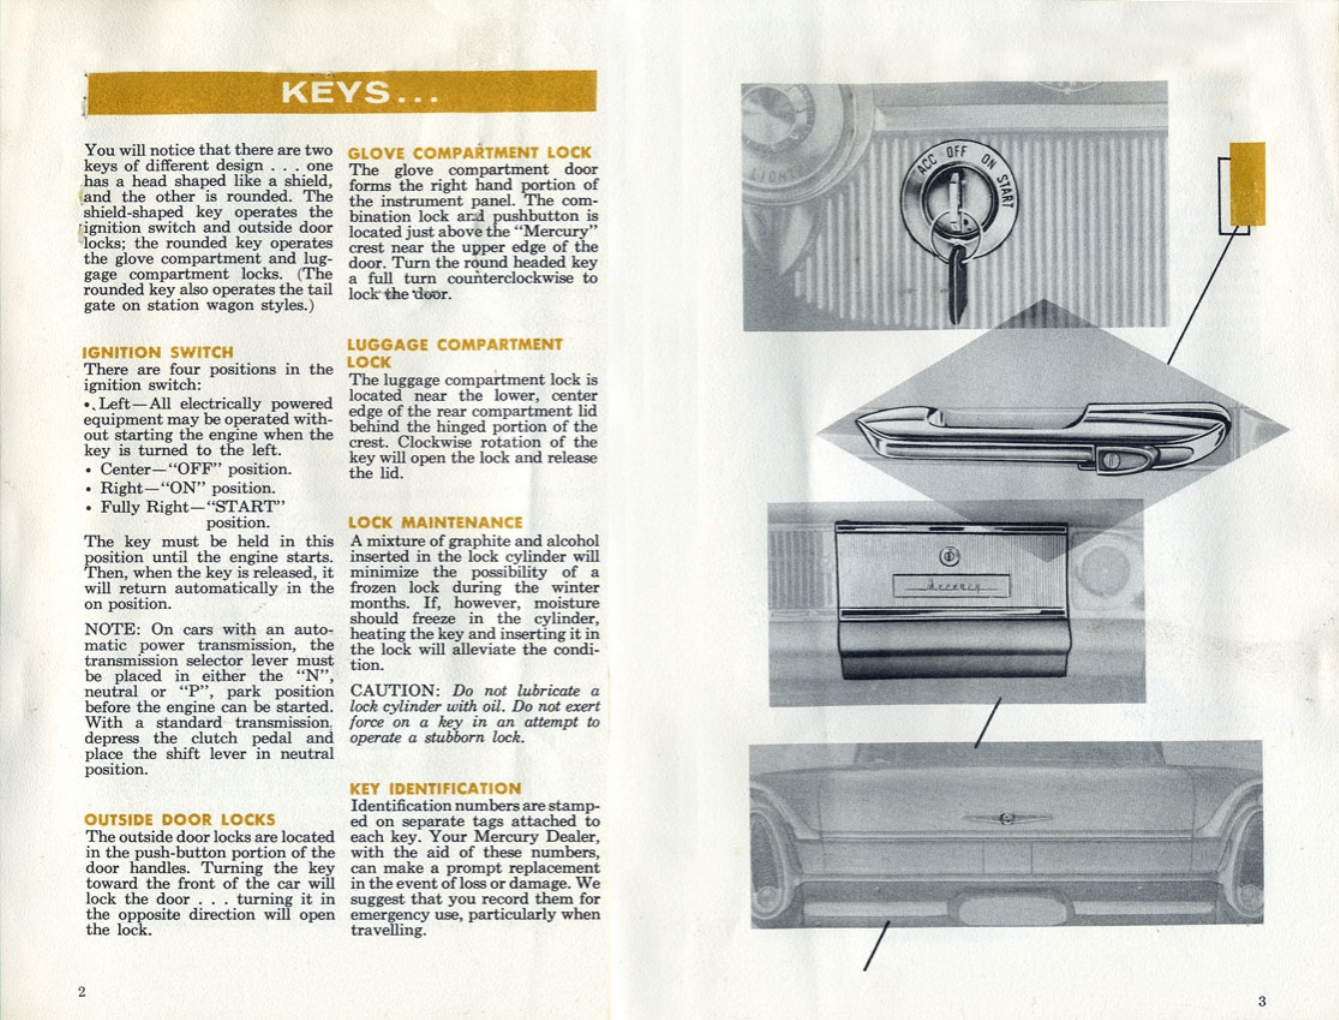 n_1960 Mercury Manual-02-03.jpg